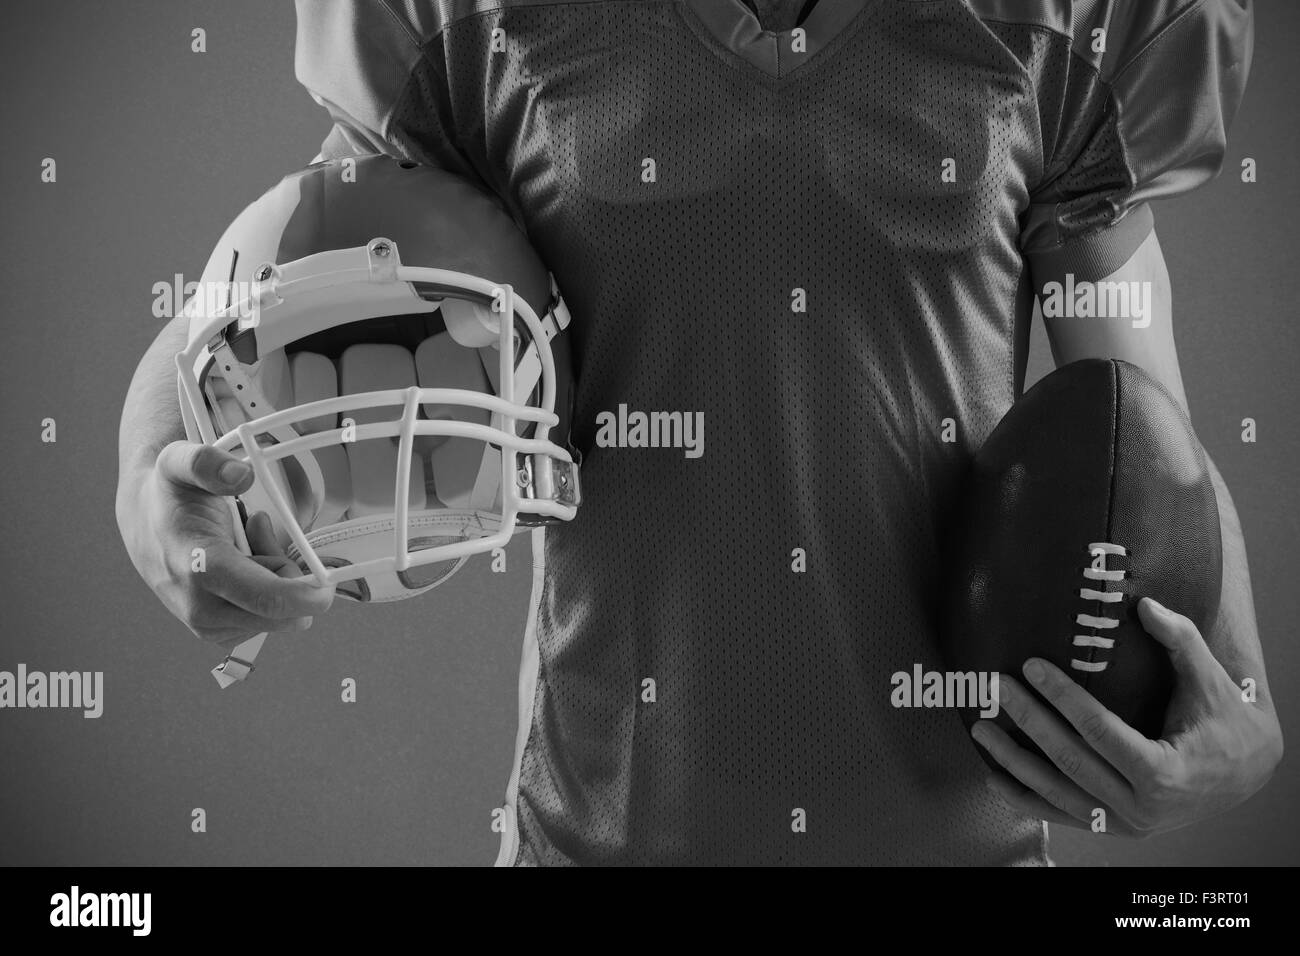 Immagine composita del giocatore di football americano tenendo un casco e sfera Foto Stock